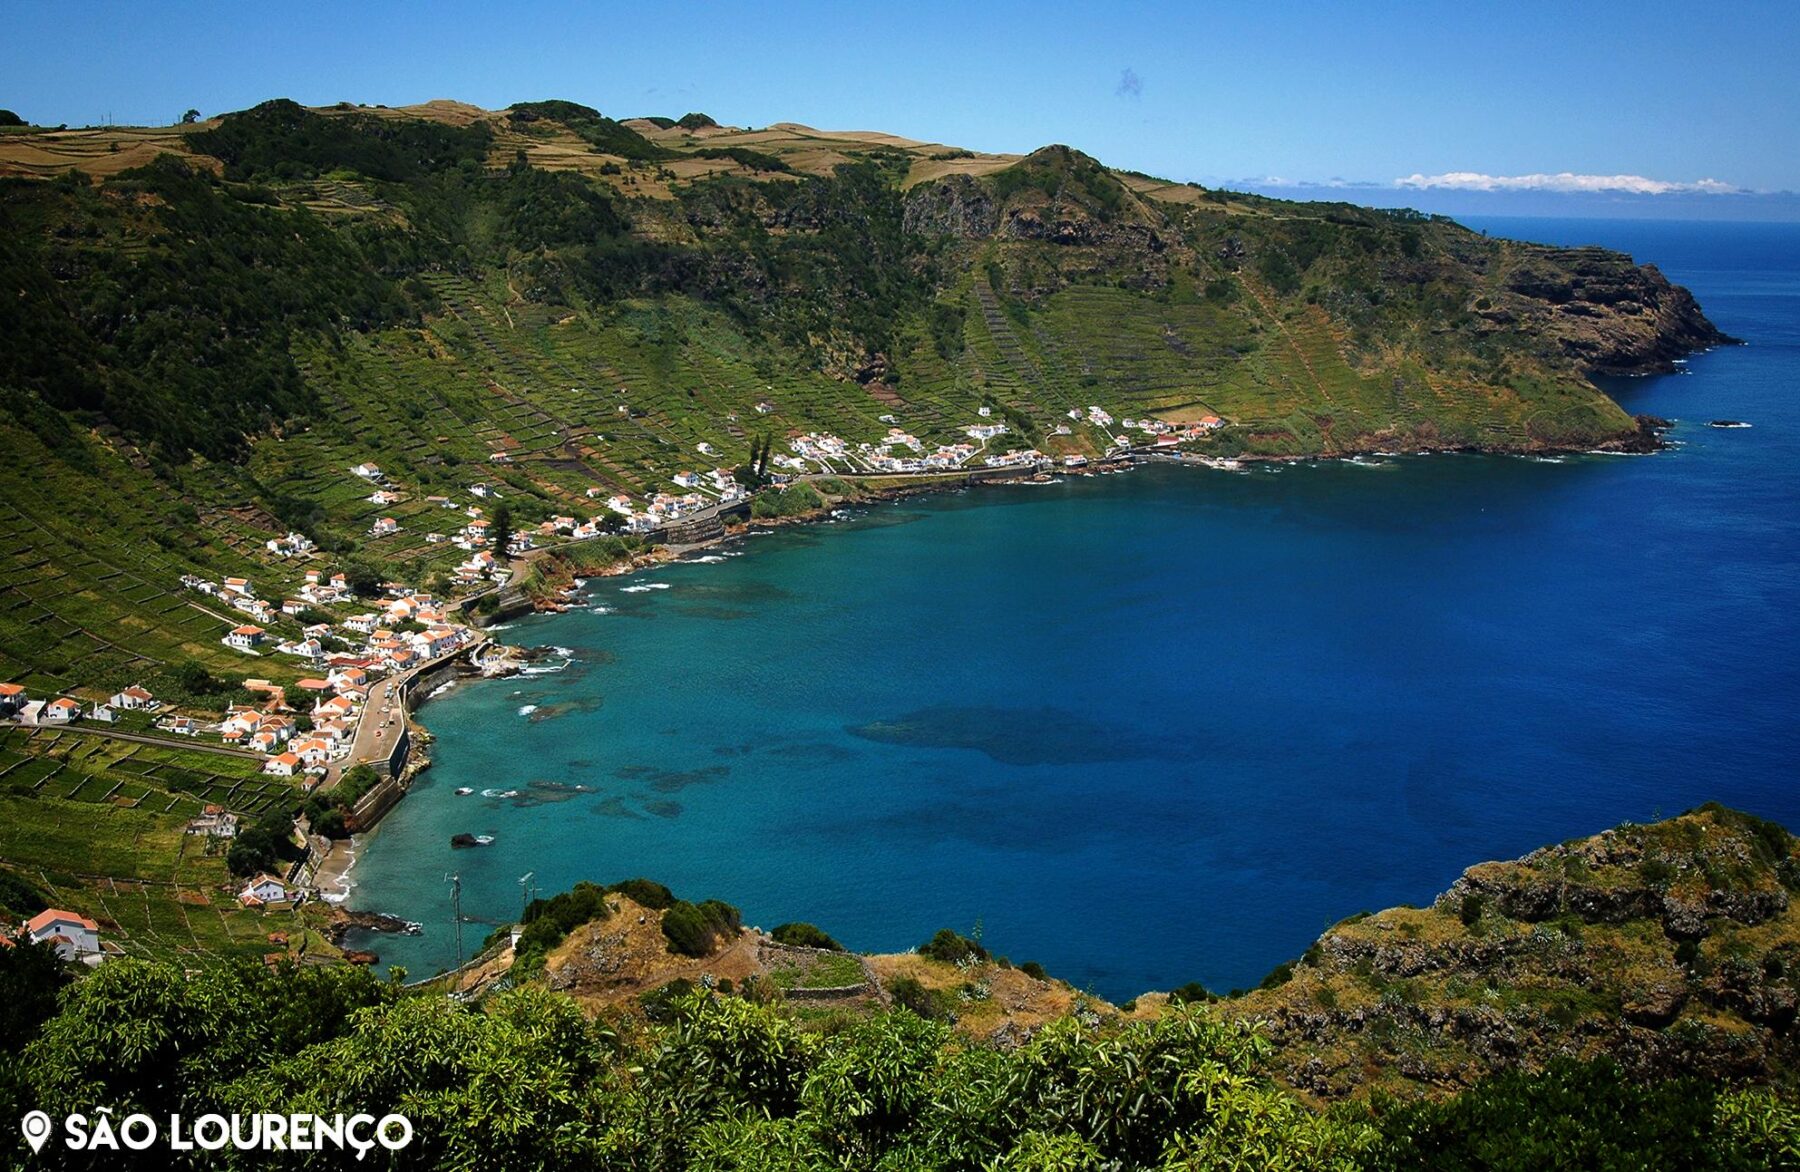 Baía de São Lourenço, Ilha de Santa Maria, Açores